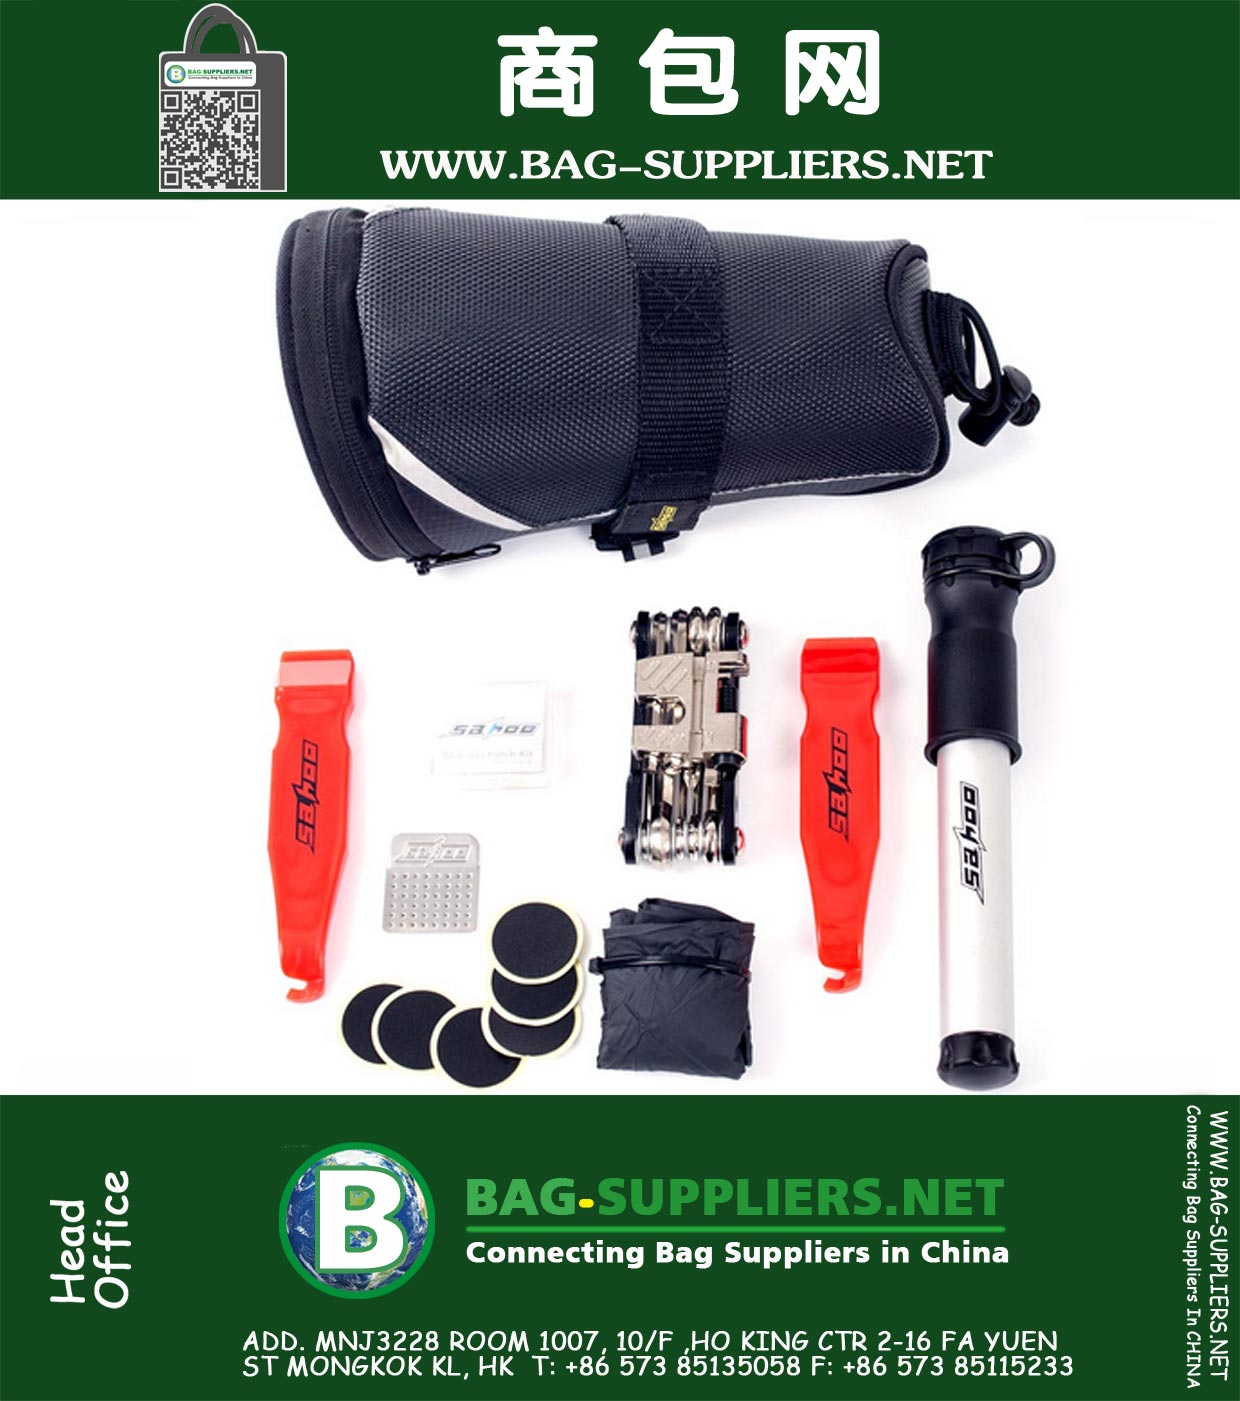 Cycling Bicycle Bike Repair Tools Kit Set with Pump Saddle Bag Black For Bicycle Bike Refit Repair Fix Equipment Tool